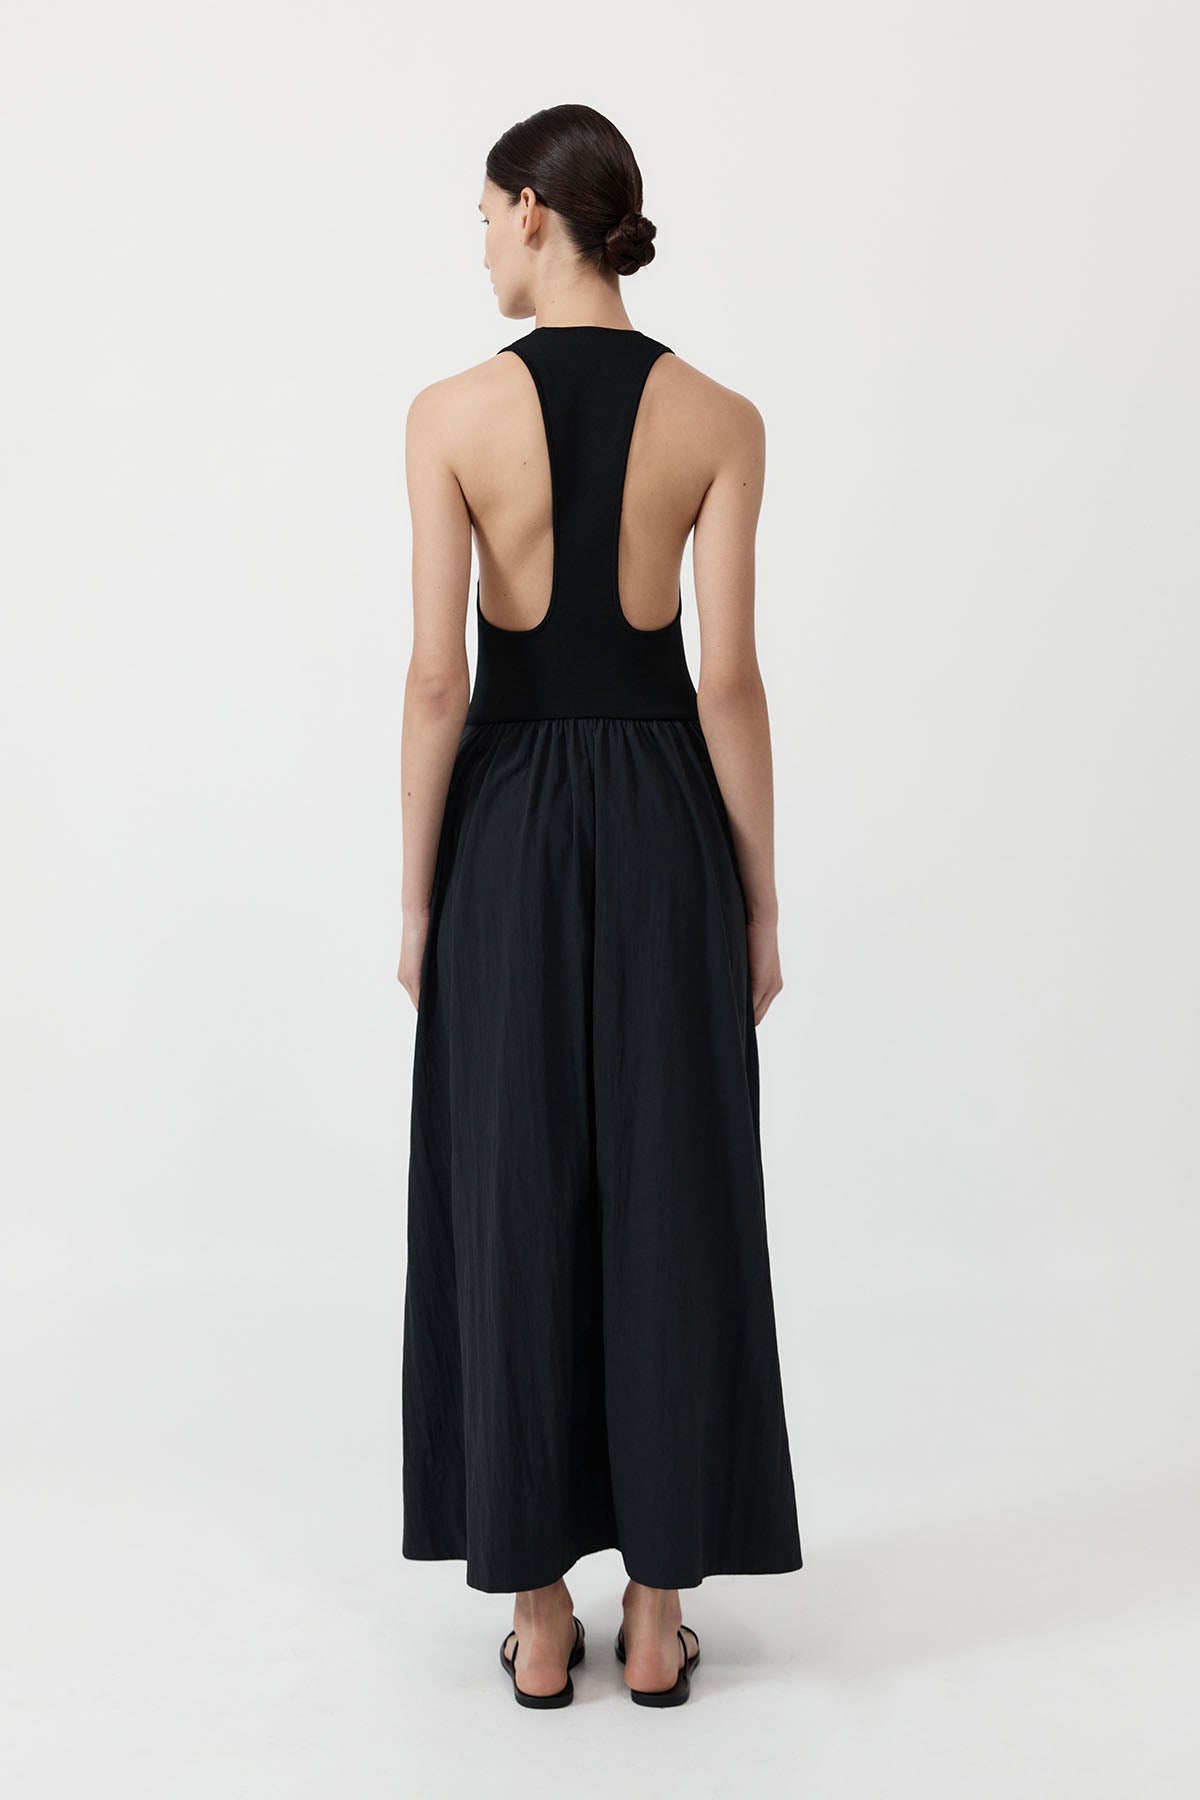 Plunge Neck Dress - Black